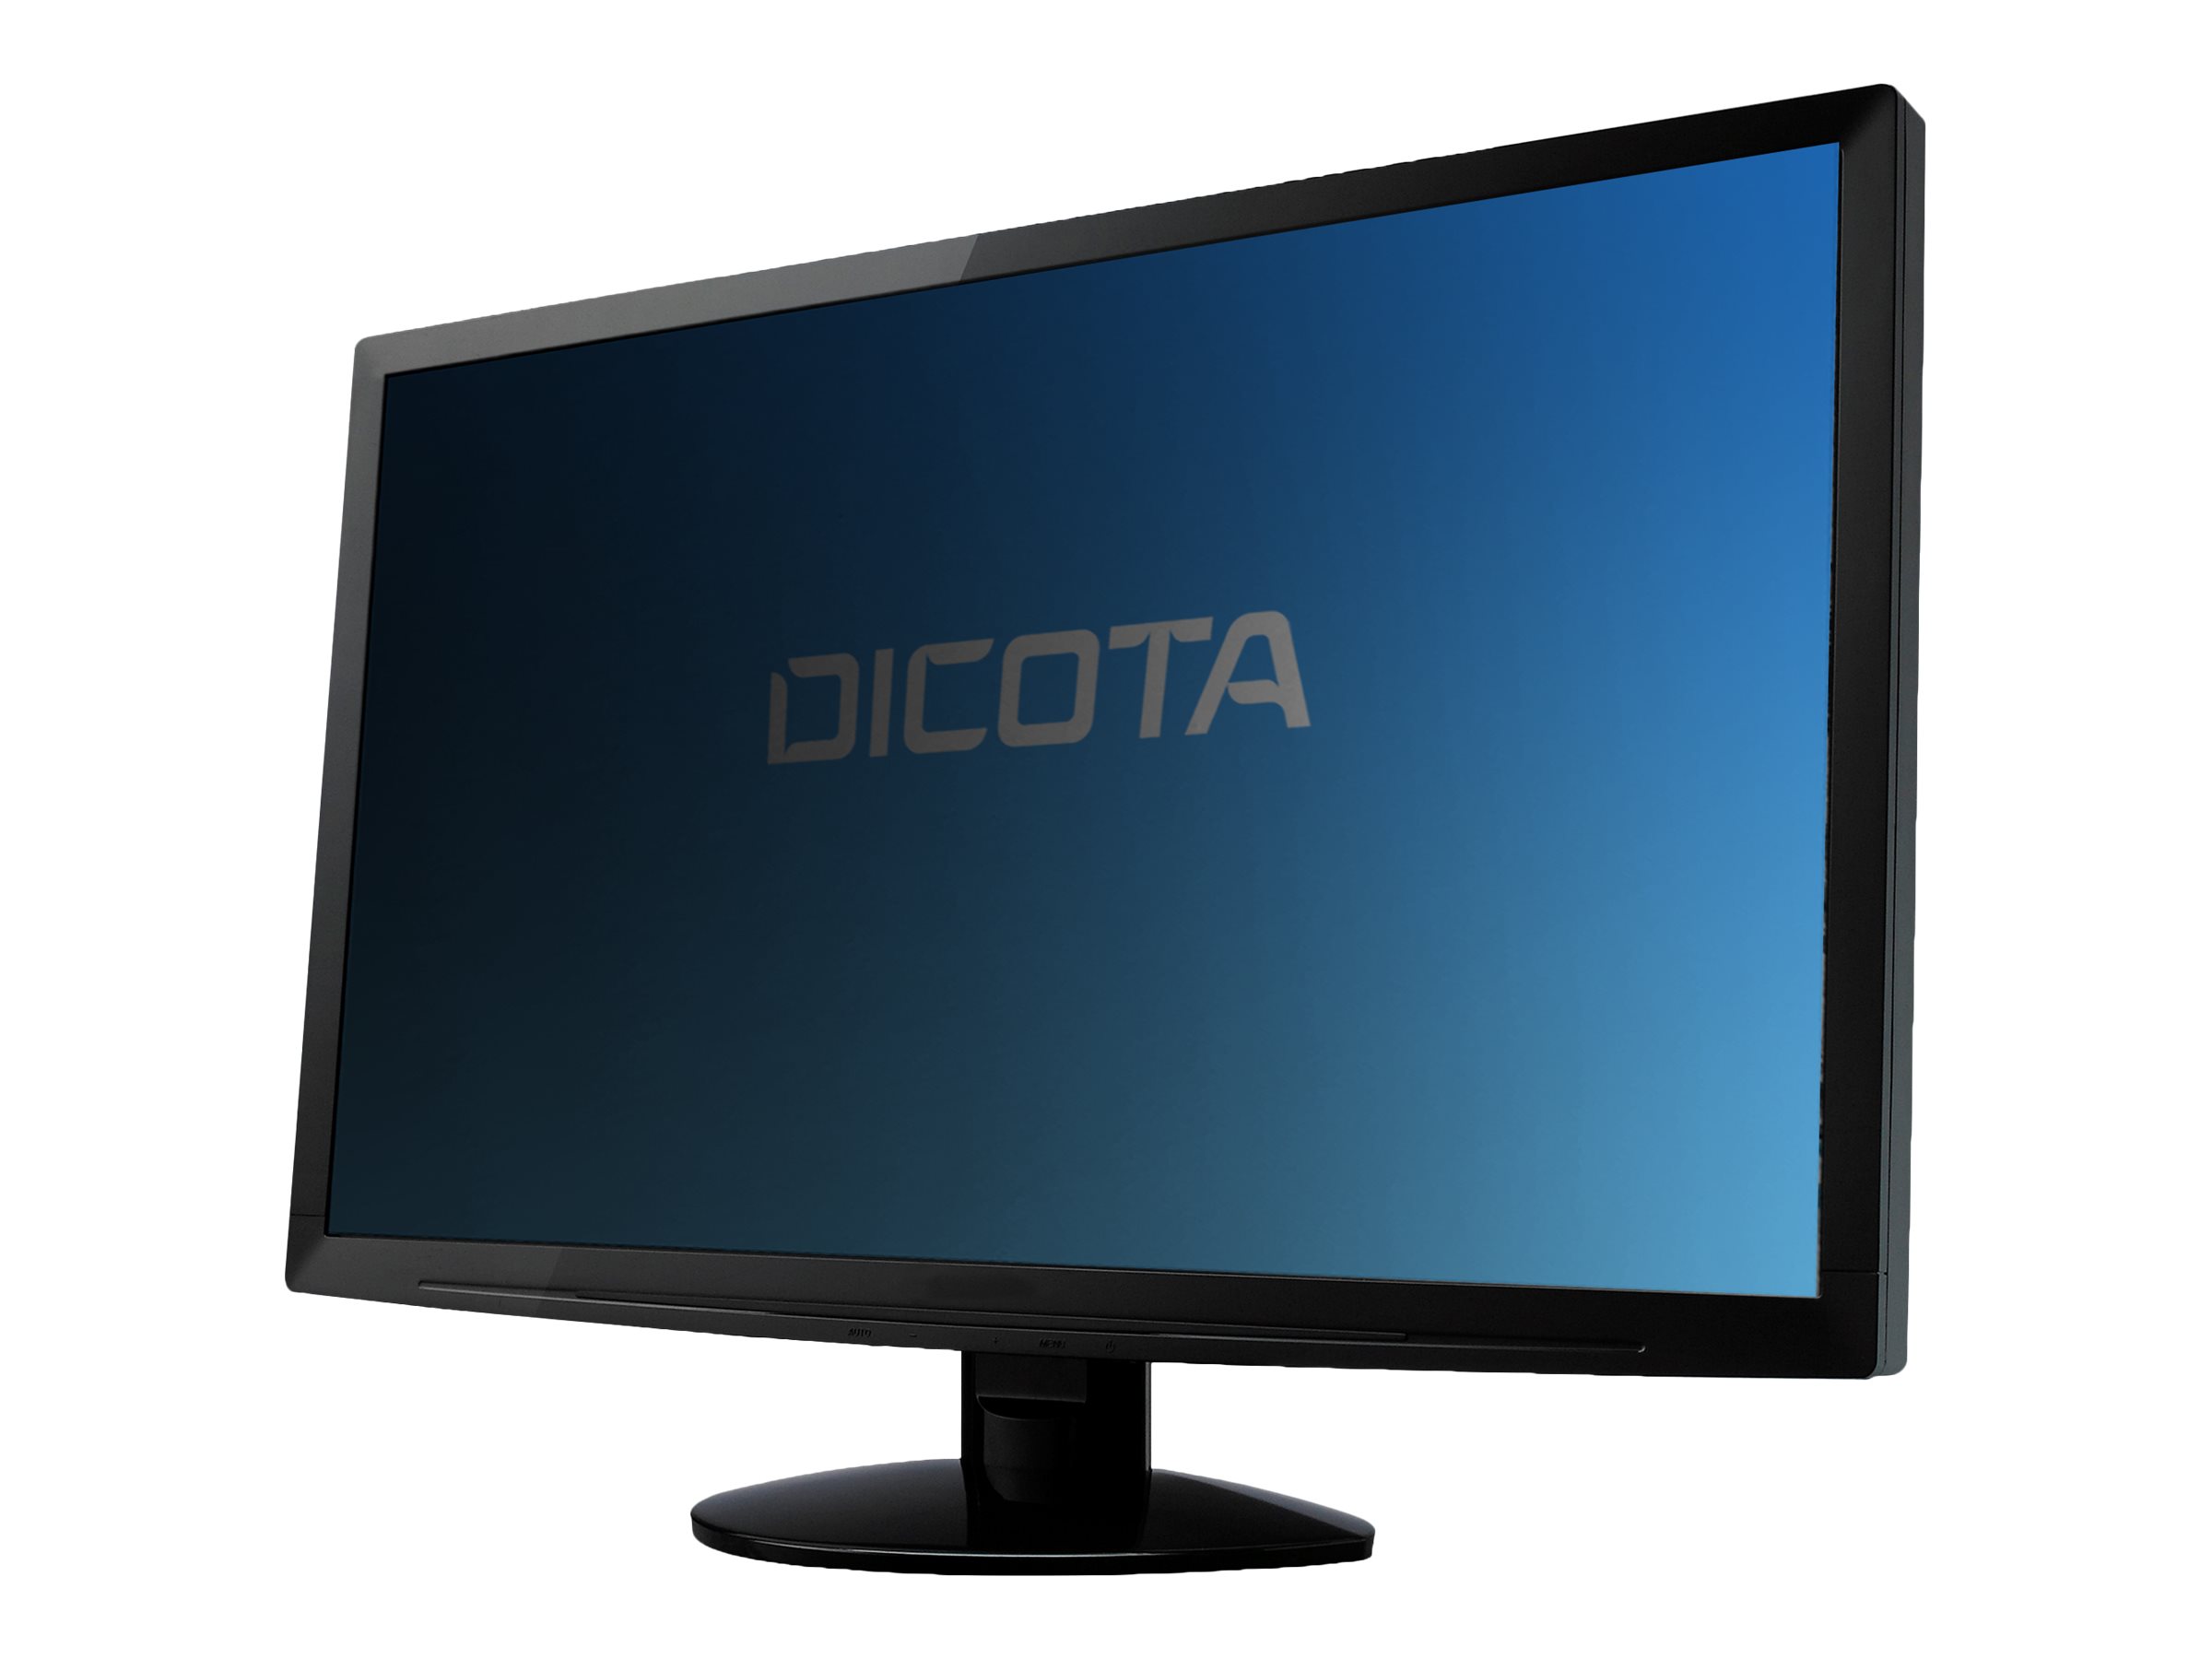 DICOTA - Filtre anti-indiscrétion - 4 voies - amovible - adhésif - 22.5" - noir - pour Lenovo ThinkVision T23d-10 - D70372 - Accessoires pour écran